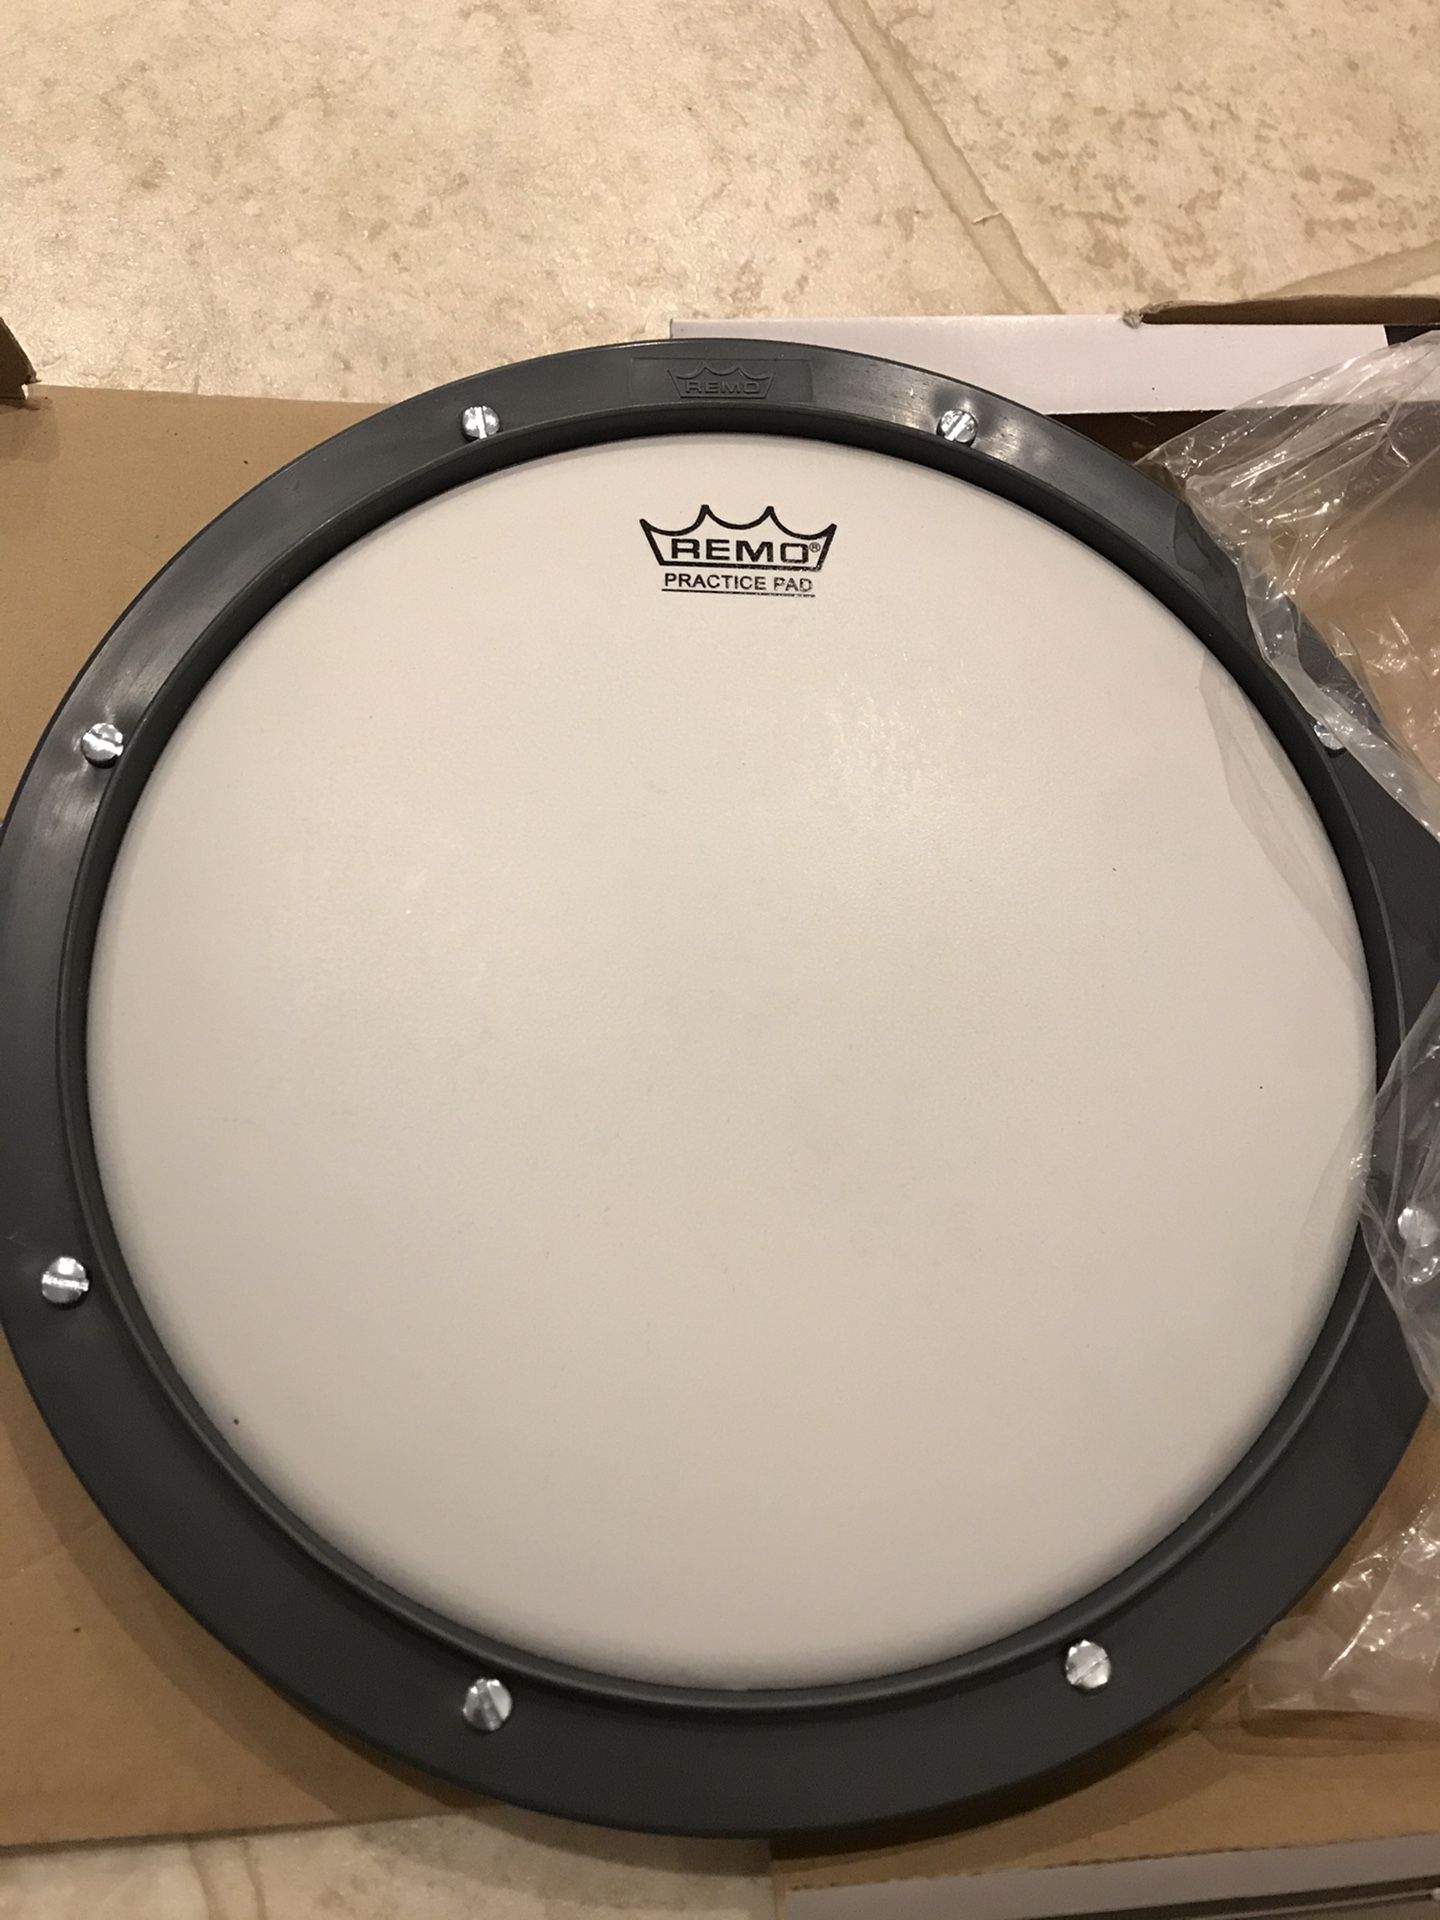 Remo Practice Drum Pad